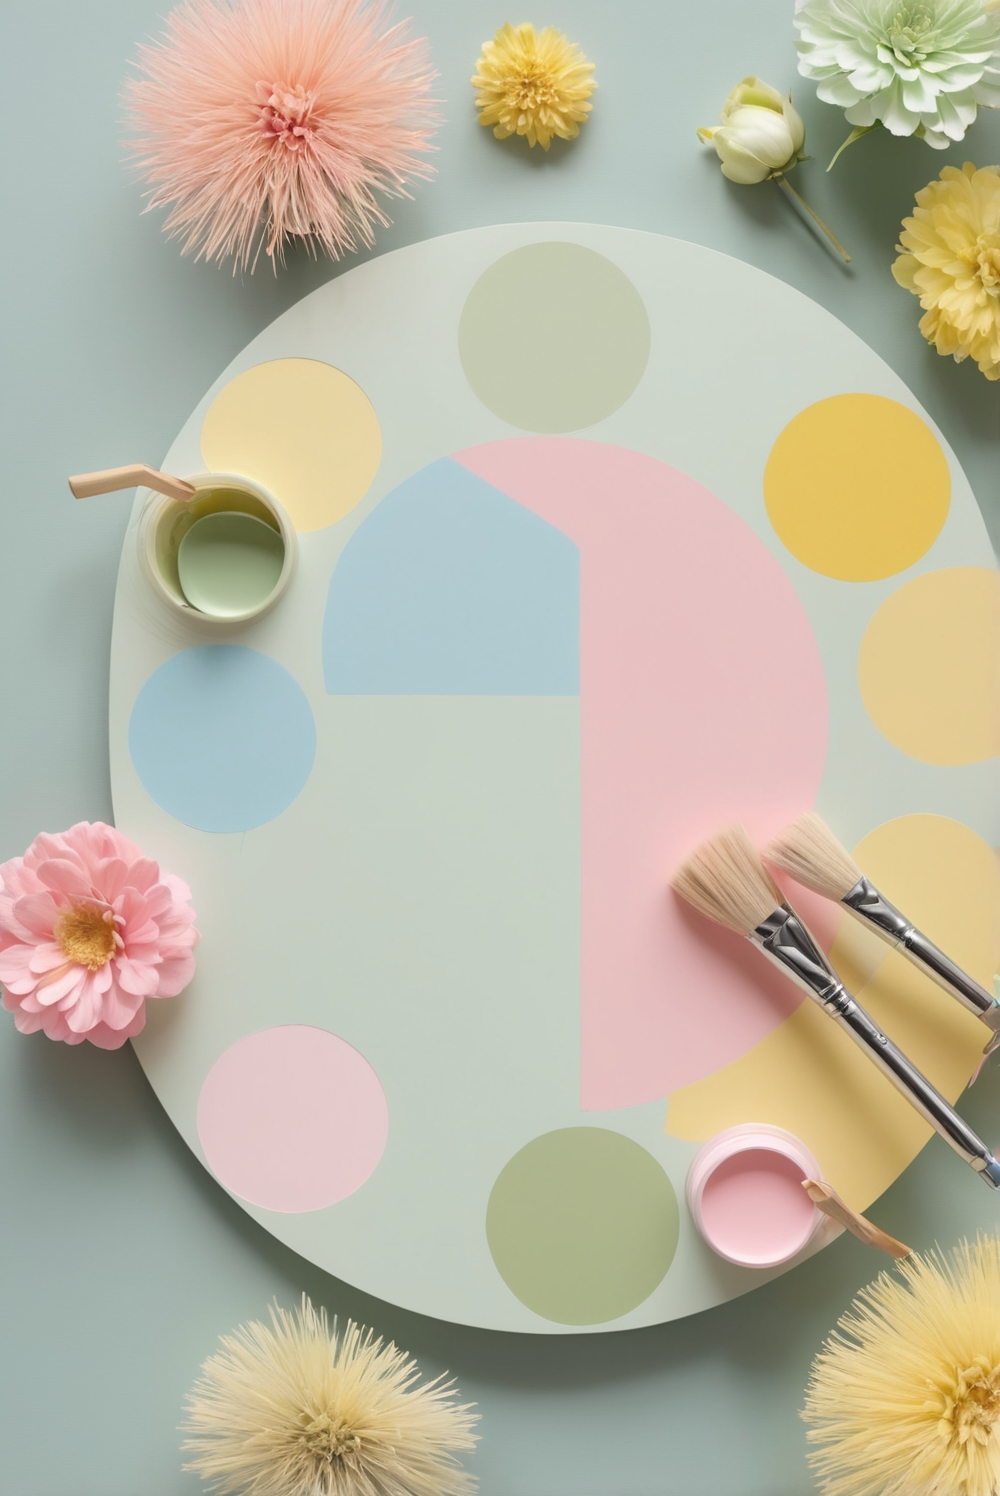 best kitchen color schemes, kitchen color trends, modern kitchen colors, popular kitchen colors, kitchen color palette, kitchen wall colors, kitchen color ideas